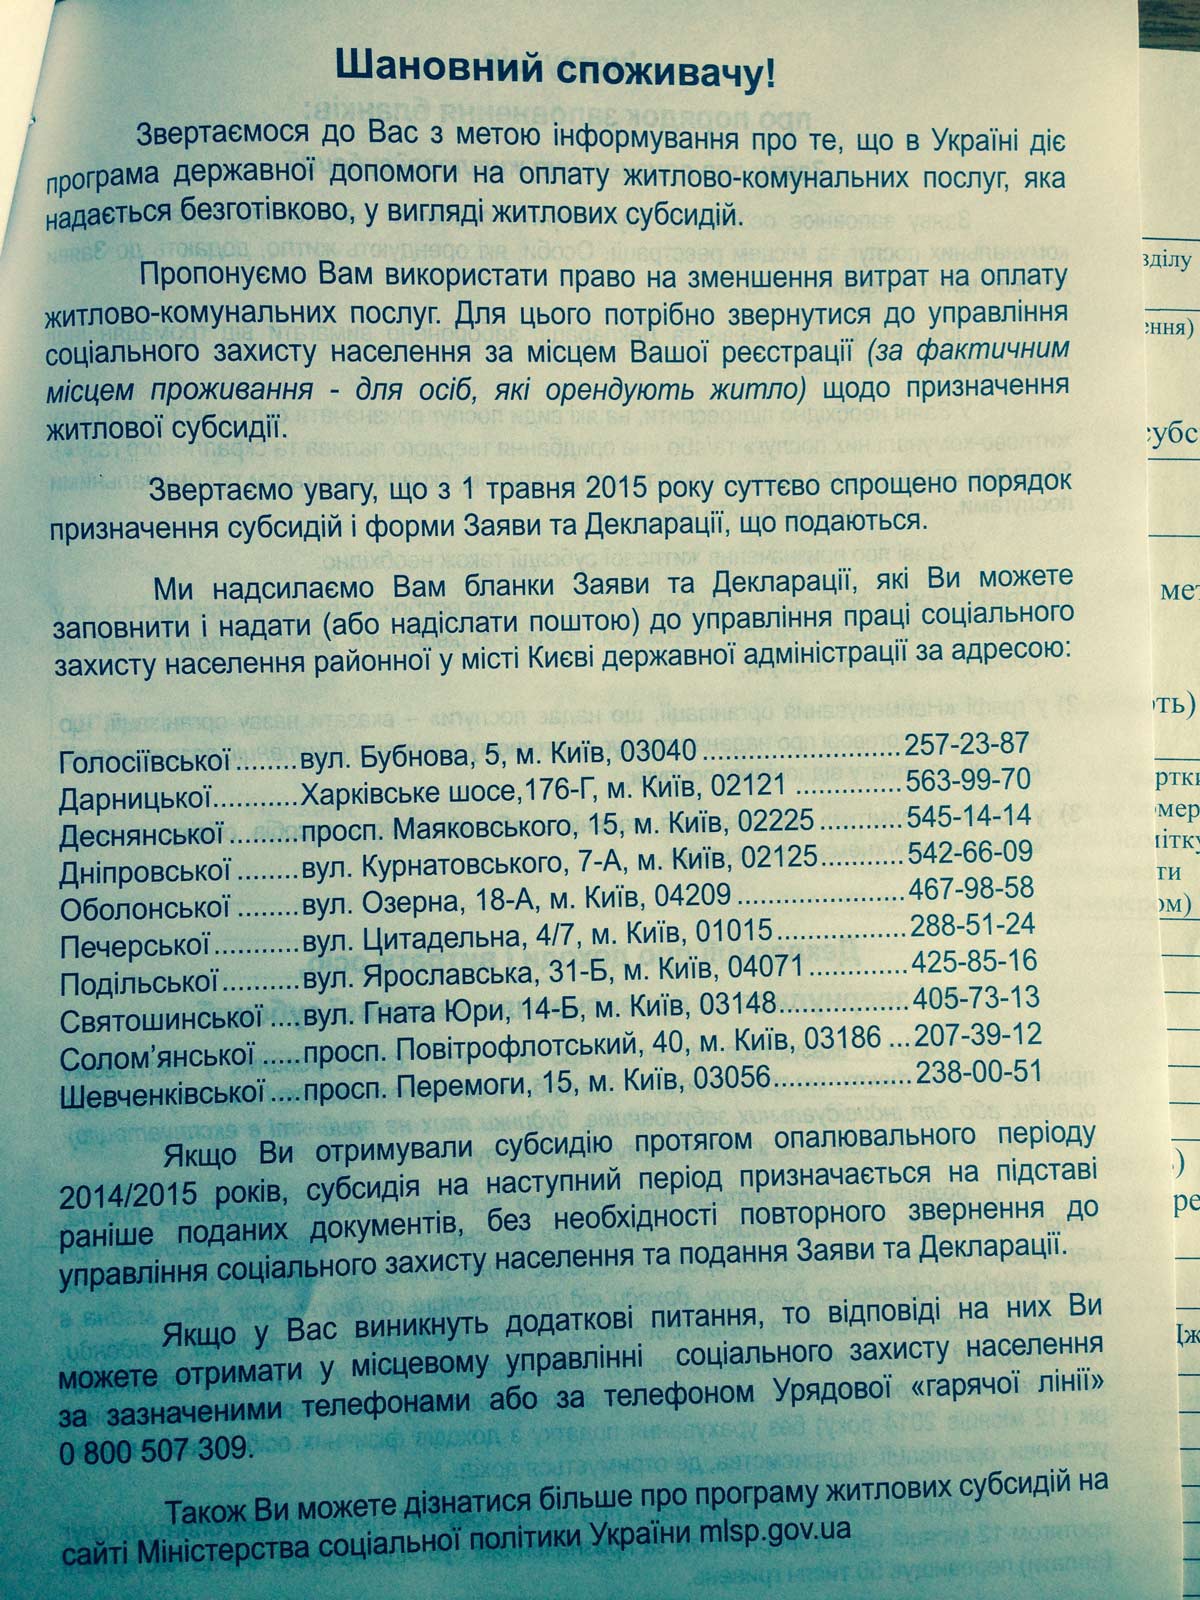 бланк заявления на субсидию украина 2015 образец